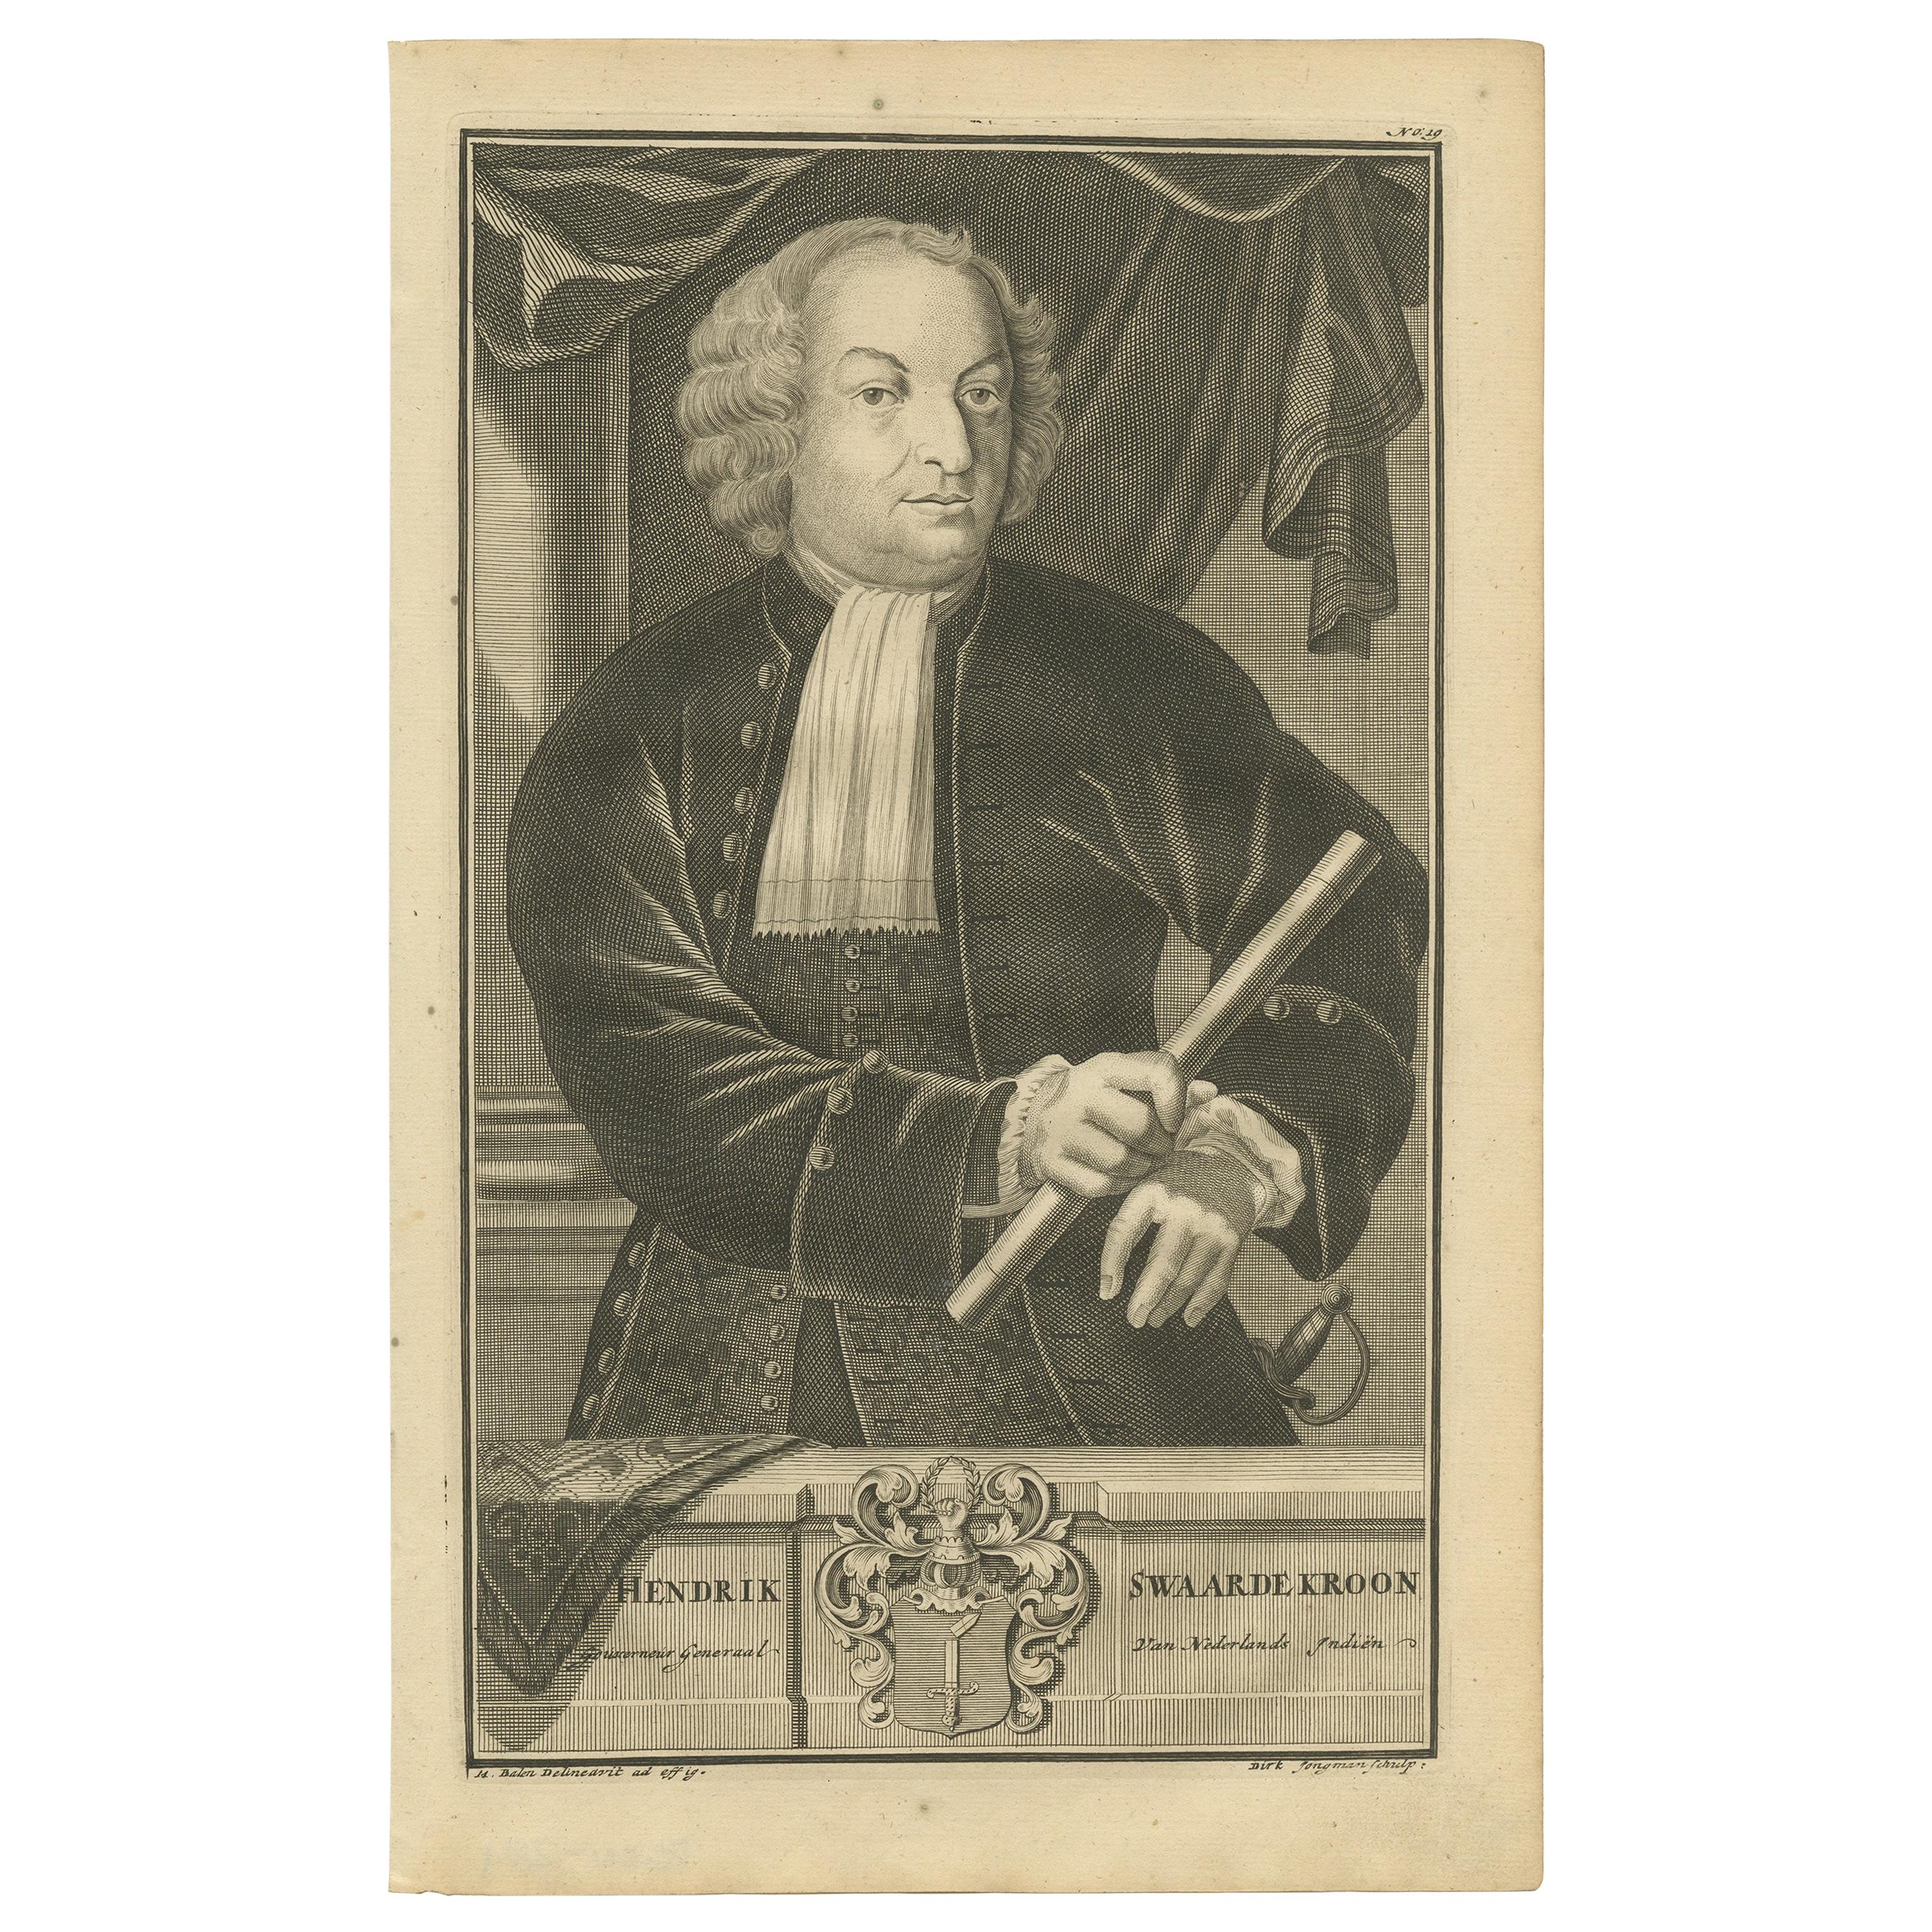 Altes Porträt von Hendrick Zwaardecroon, Gouverneur von Niederländisch-Ostindien